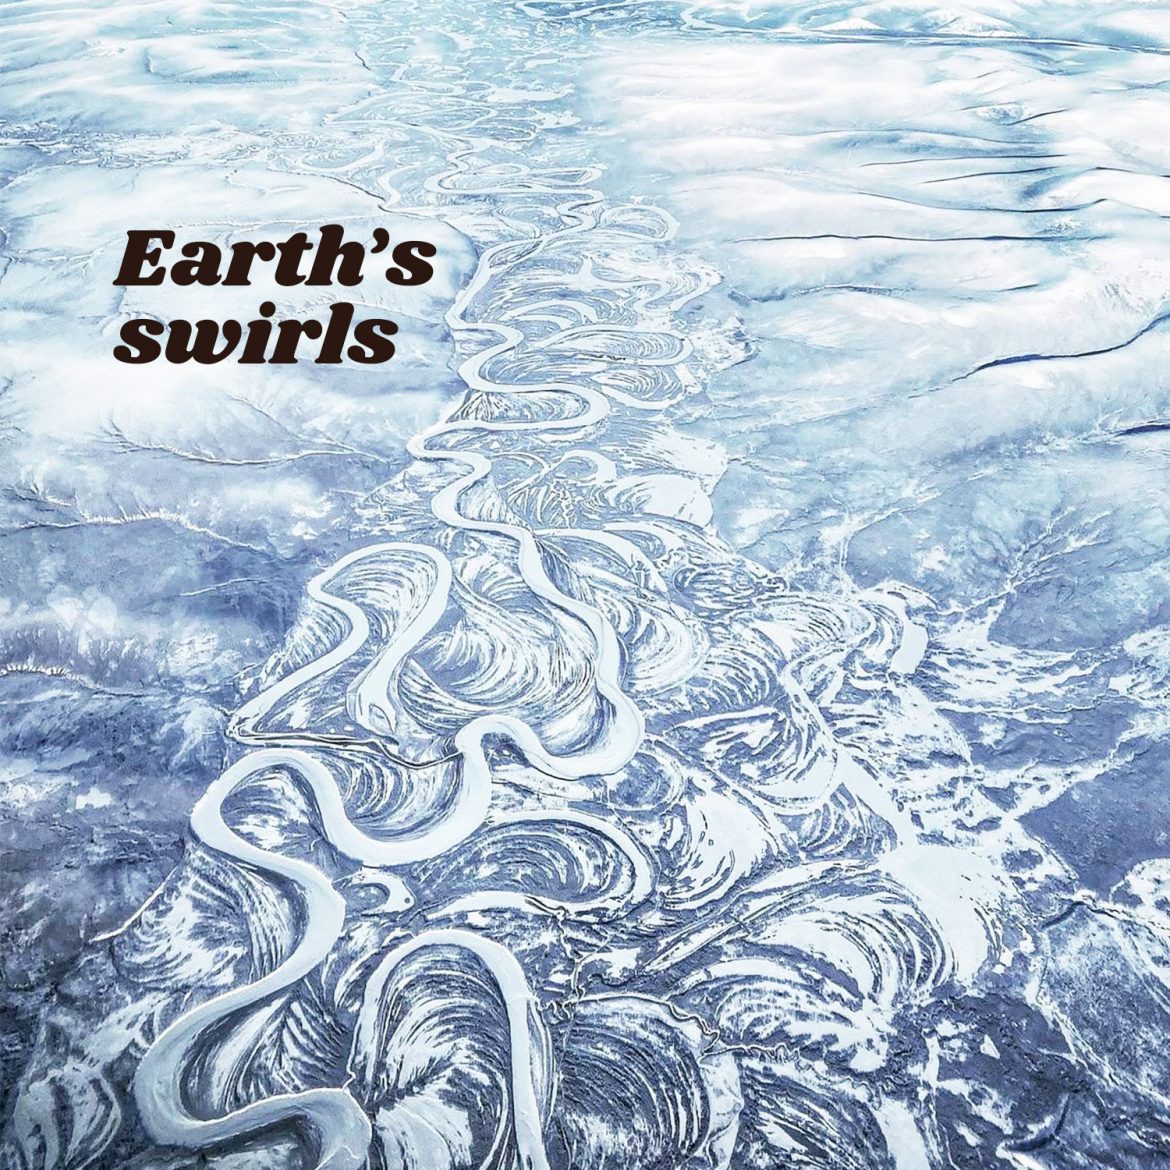 Earth’s swirls